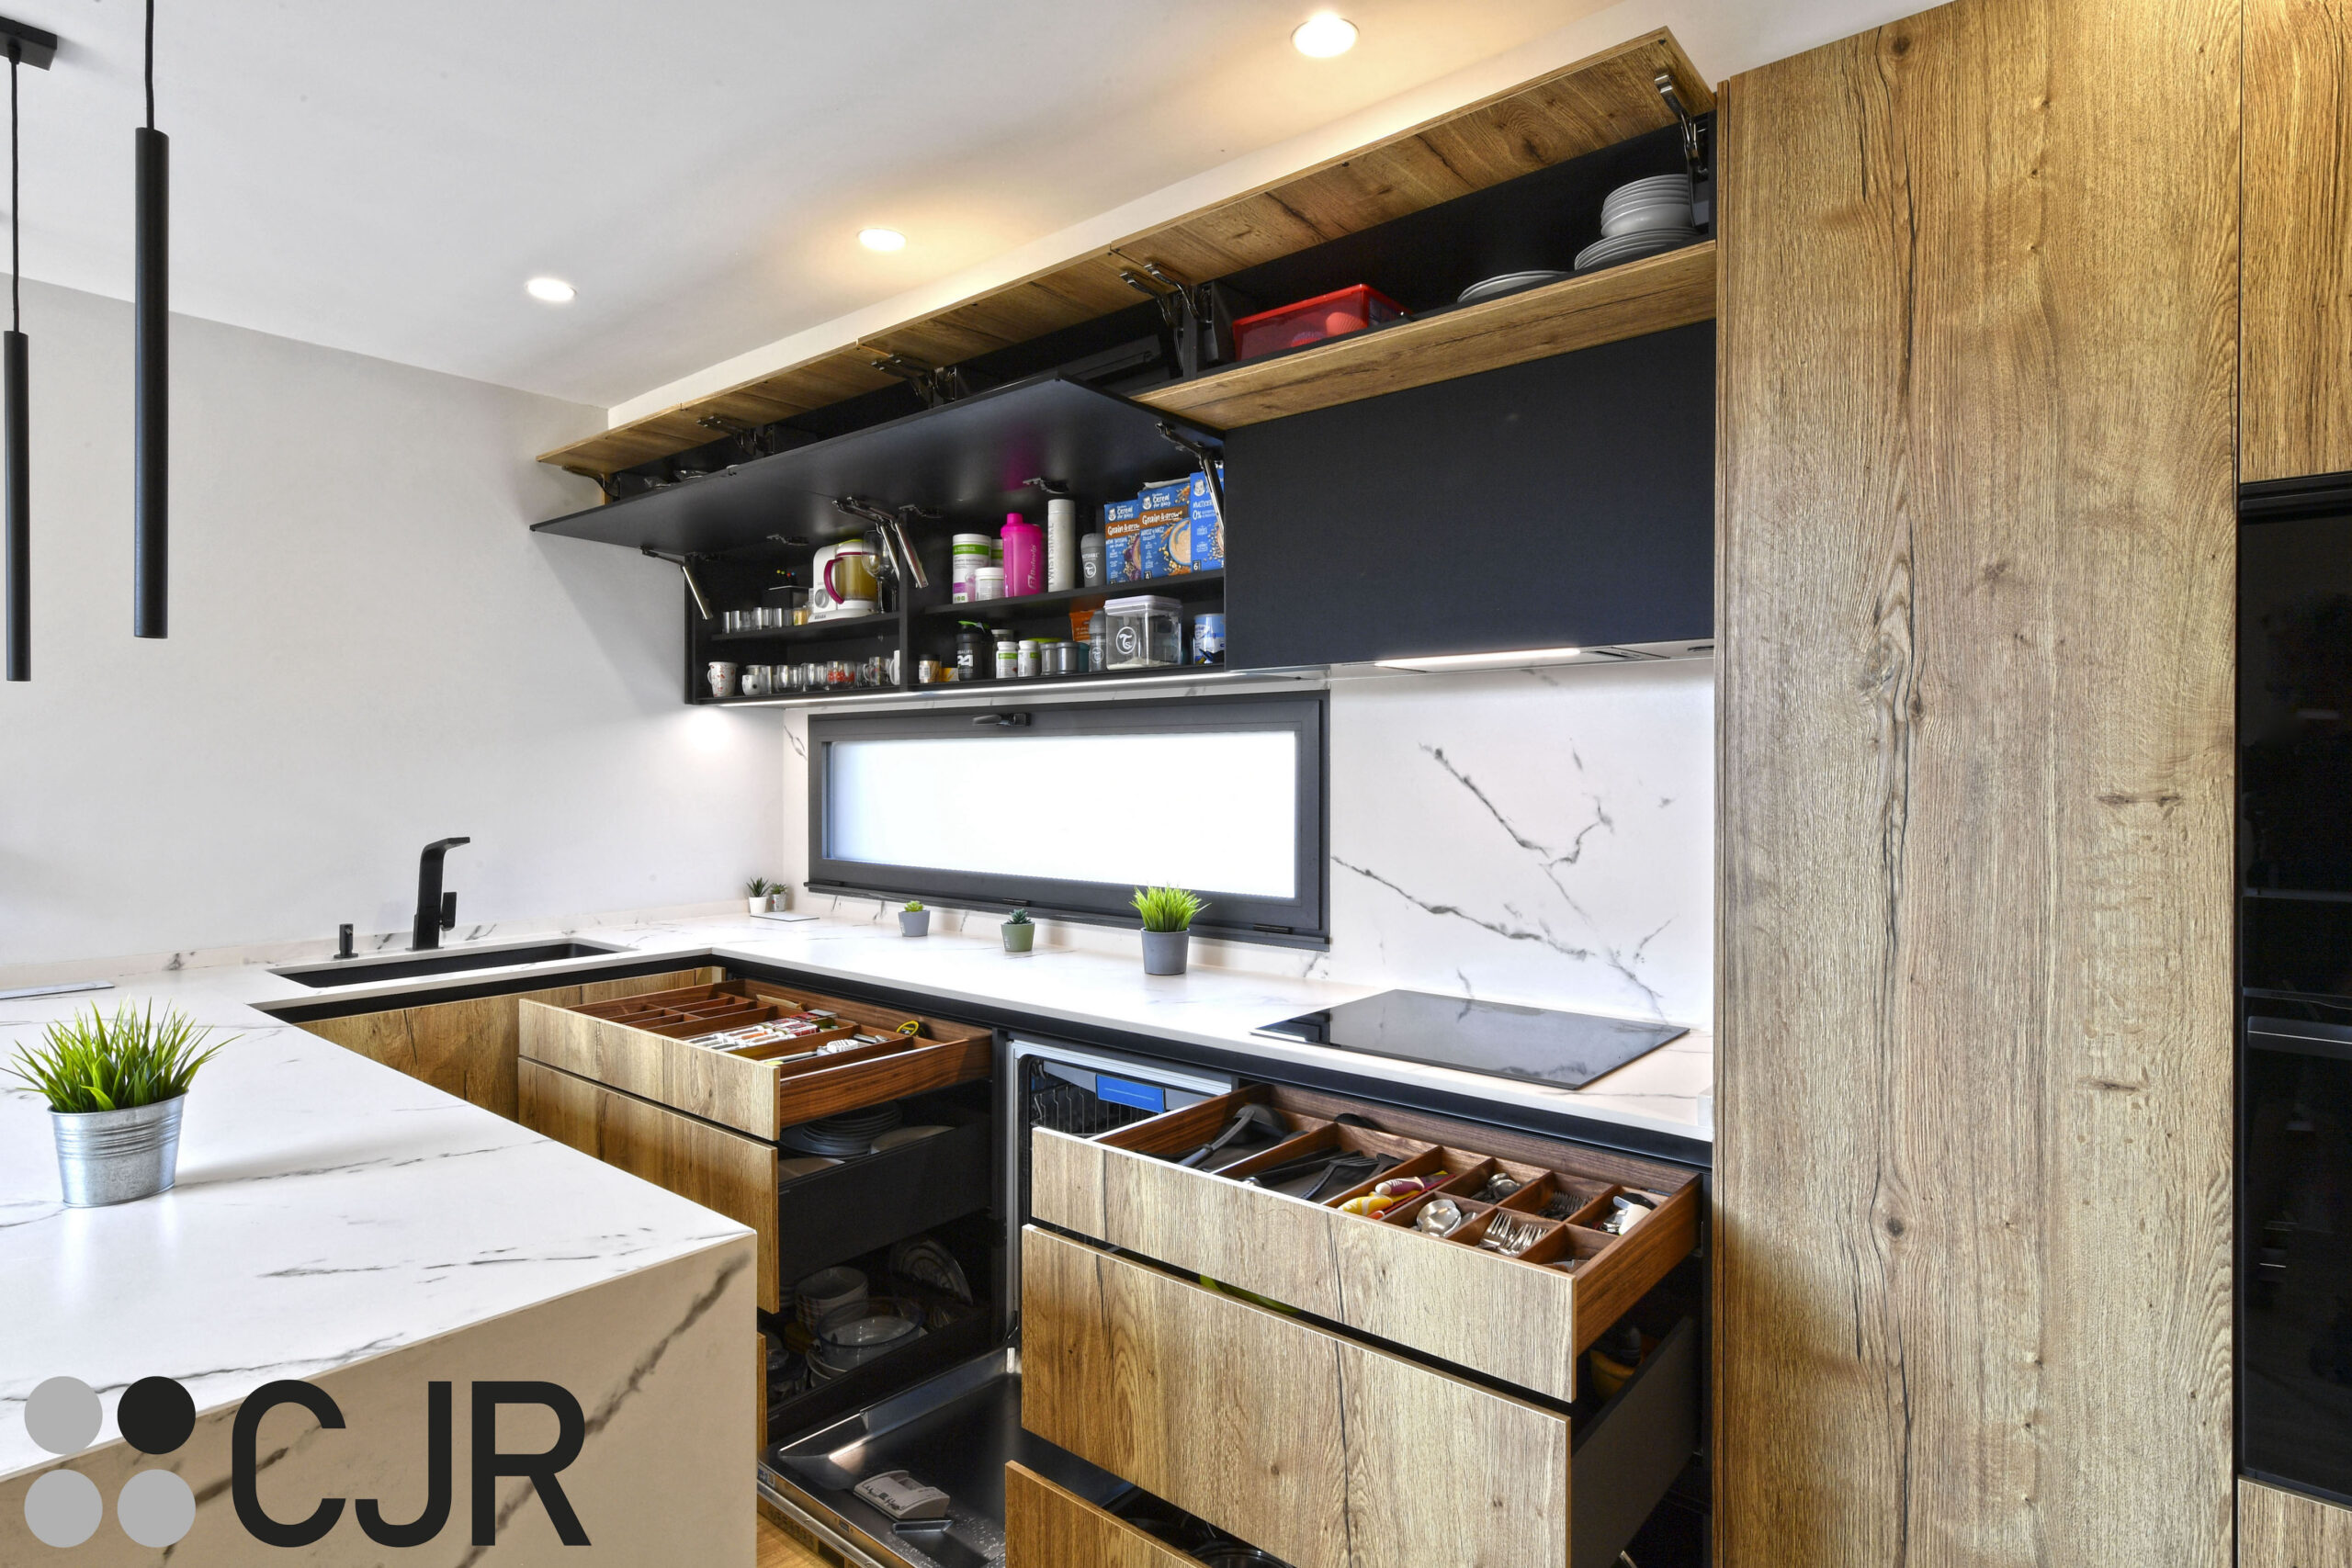 gavetas de cocina en madera con el interior en negro cocinas cjr